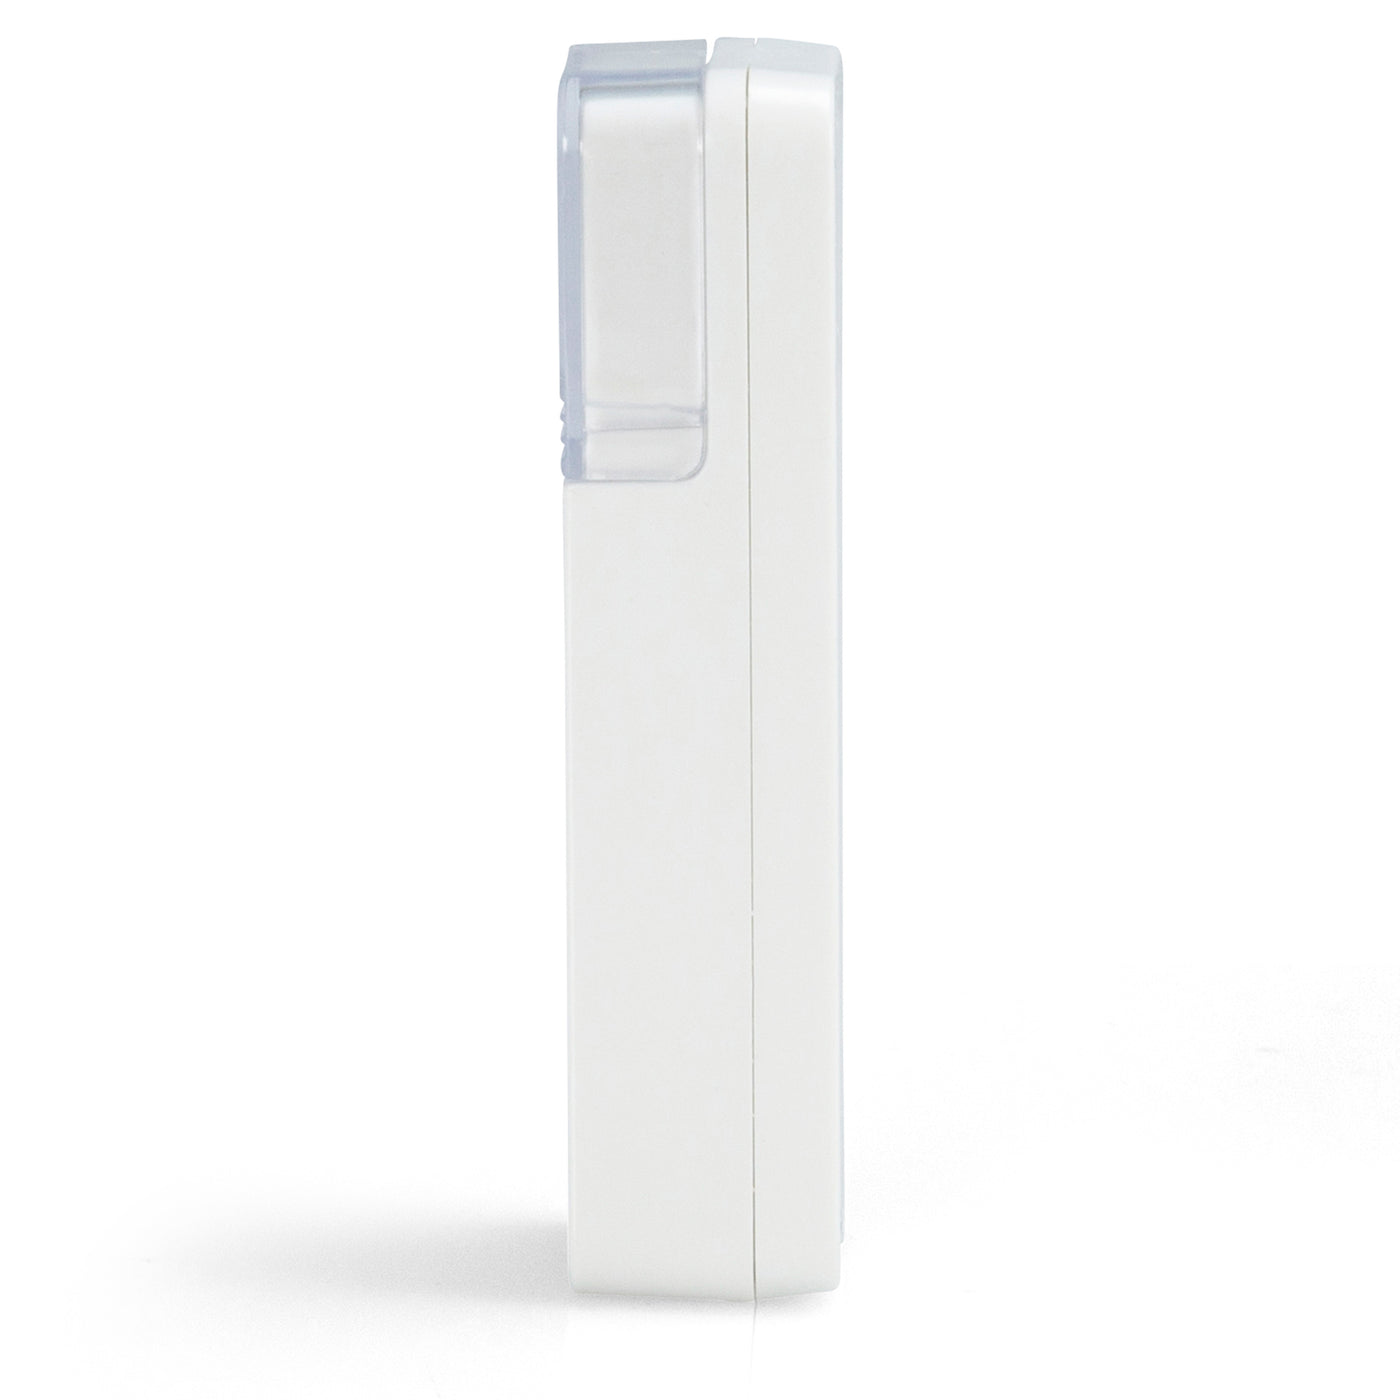 Alecto ADB-19 - Draadloze deurbel met flitslicht, wit